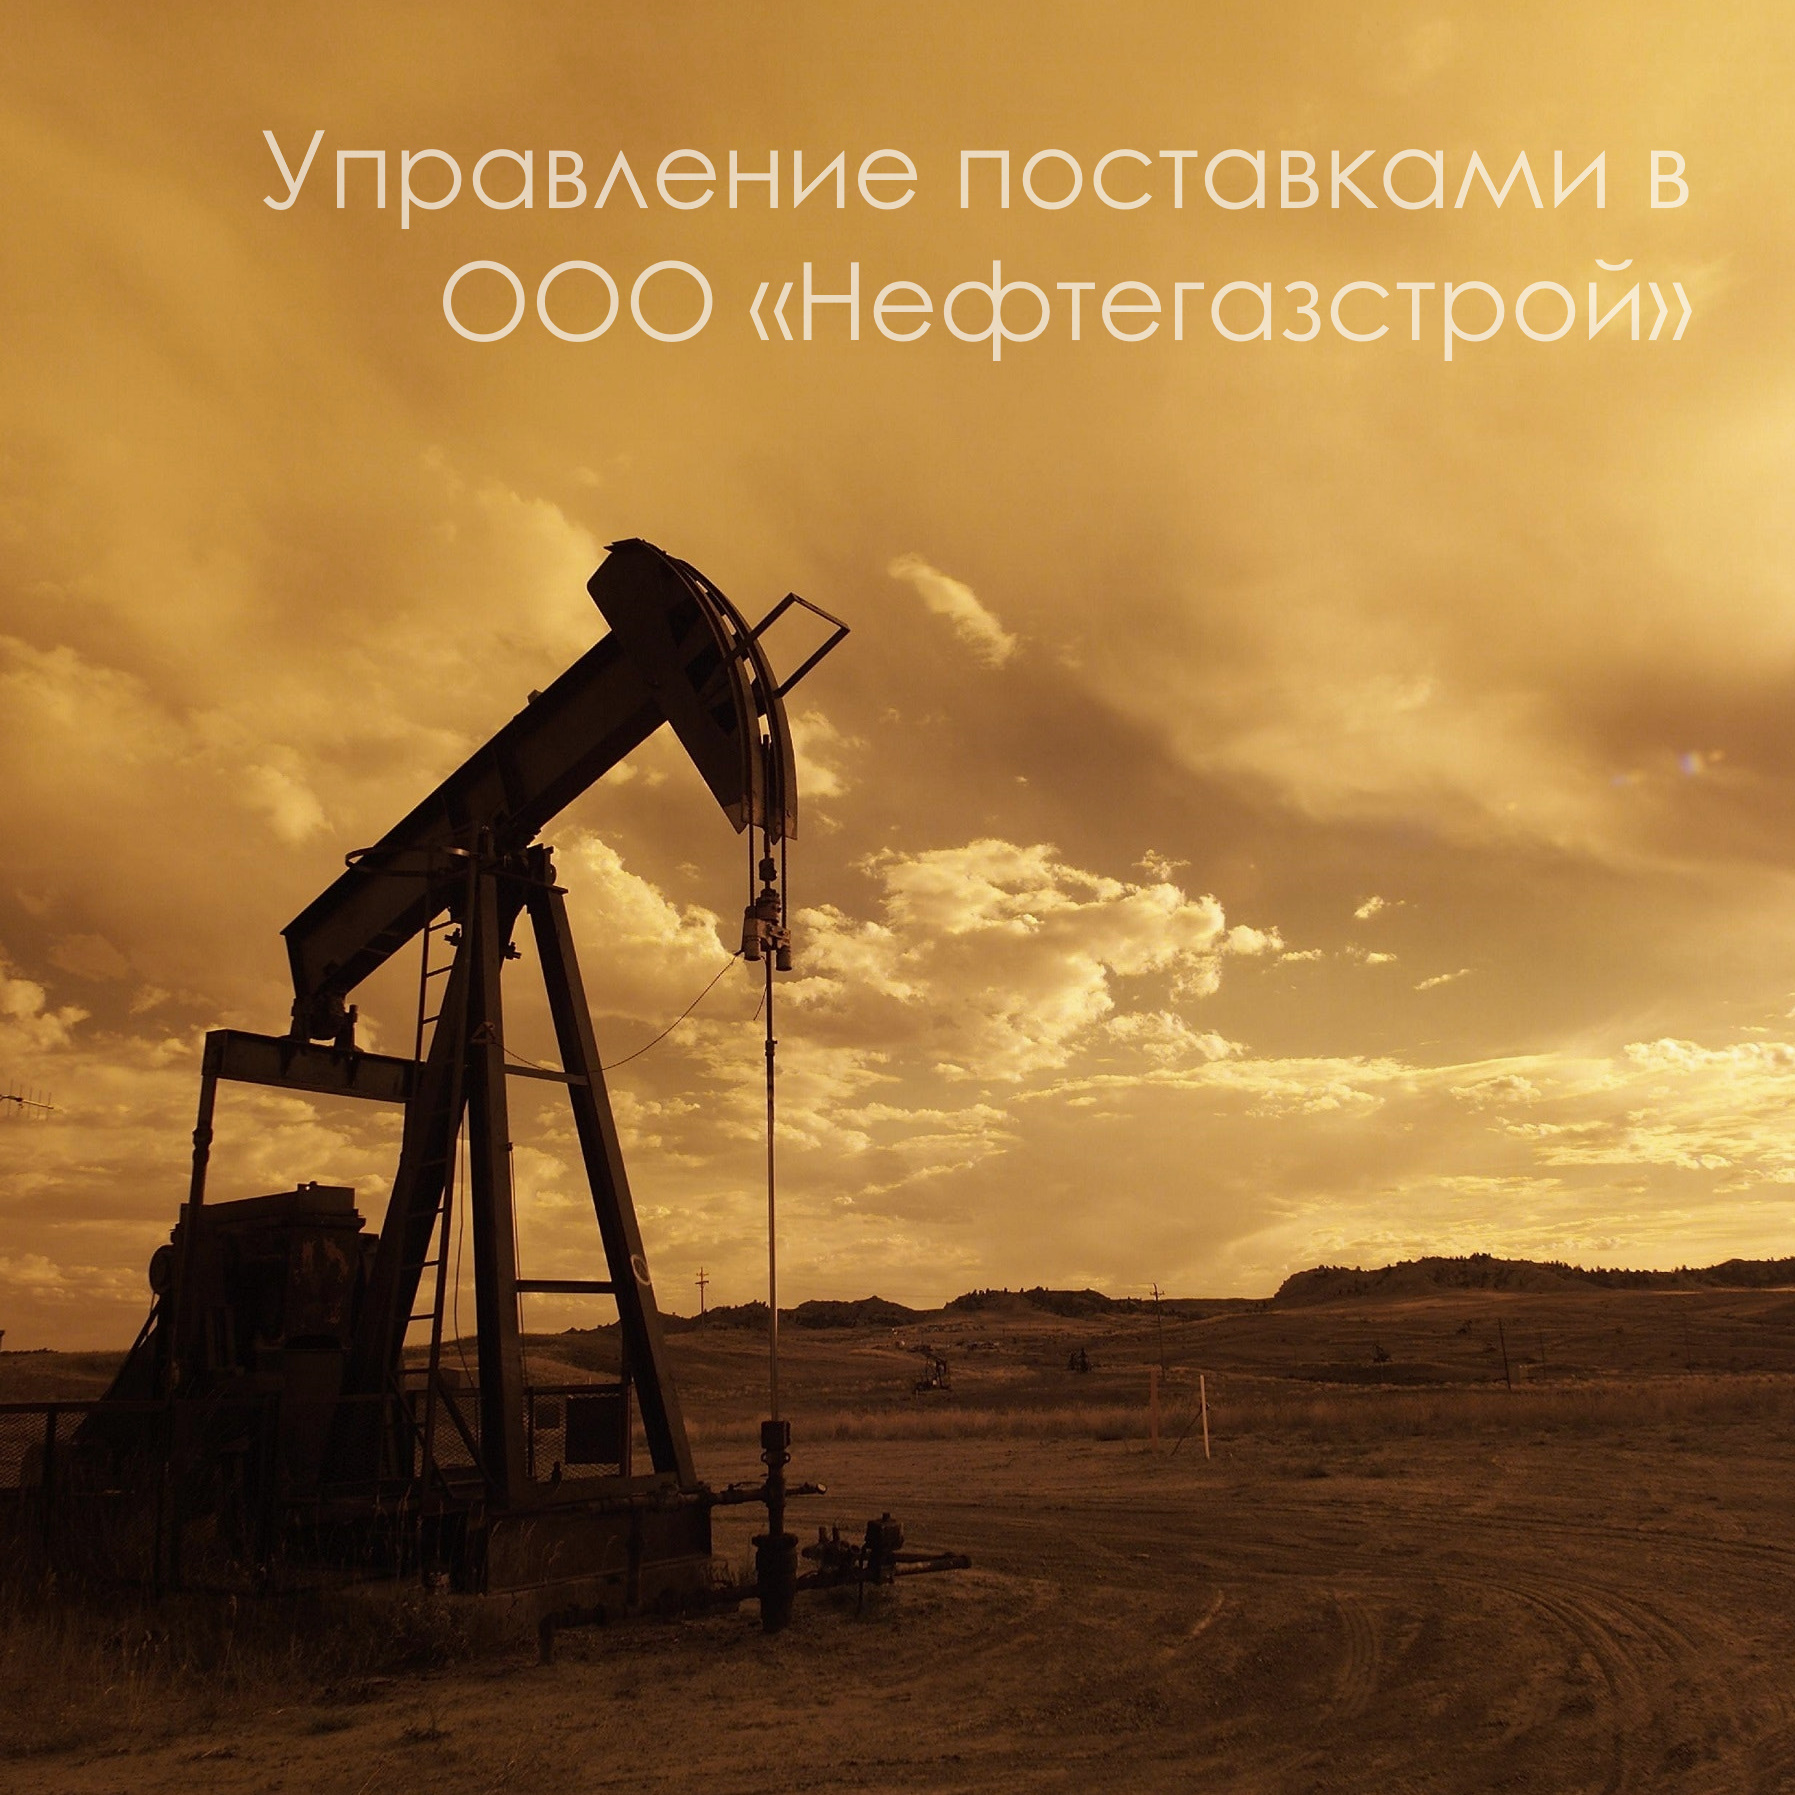 Управление поставками в ООО «Нефтегазстрой» на базе Lexema-Framework